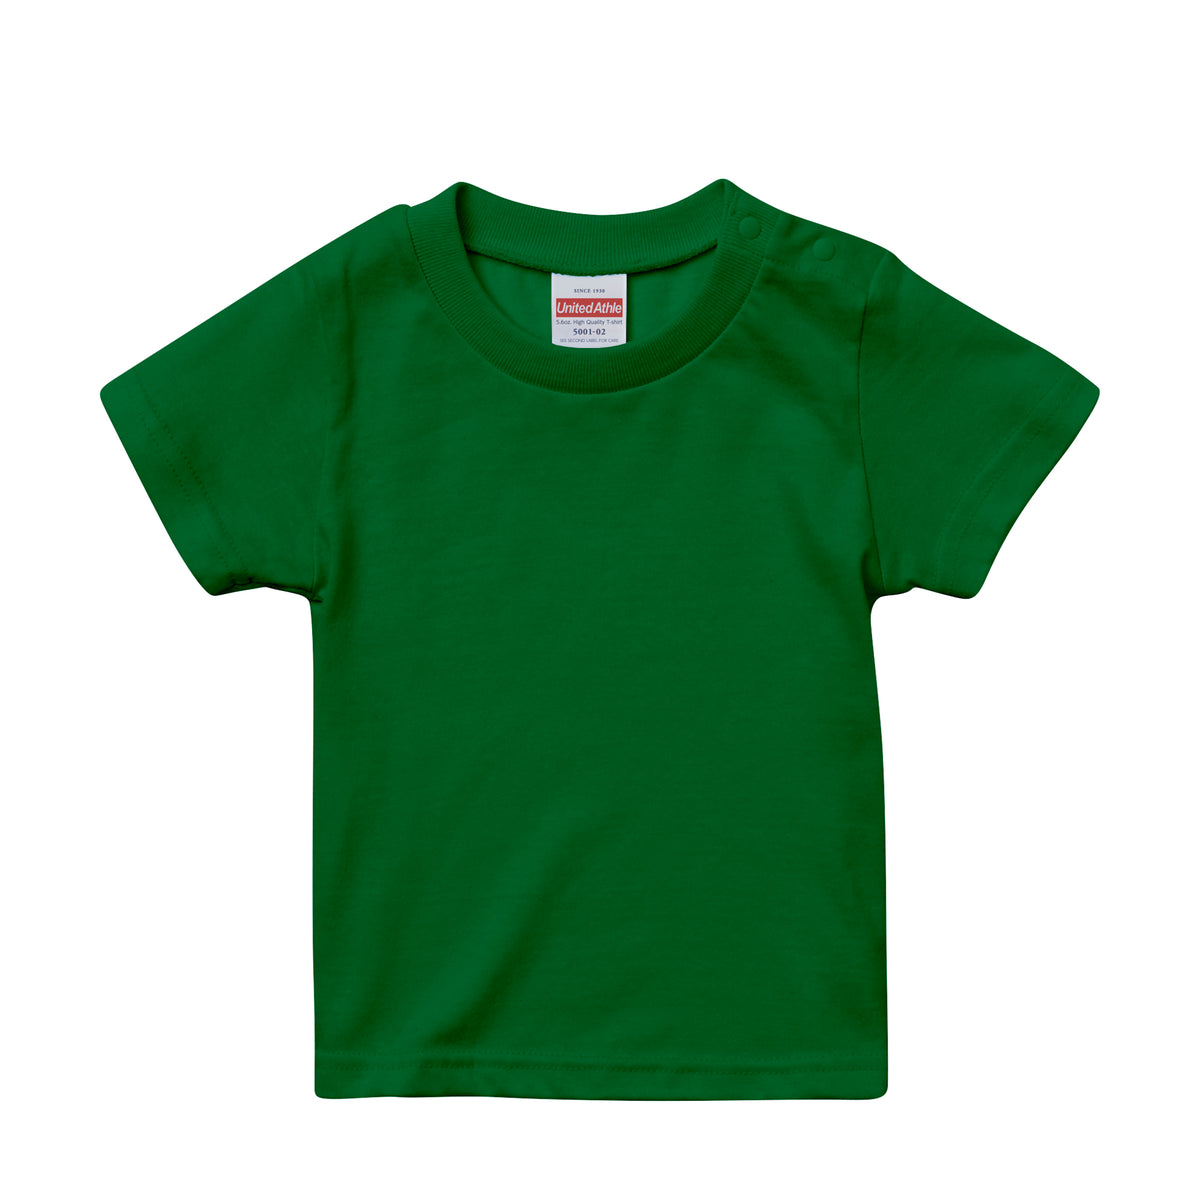 Shop グリーン(緑) at Tshirt.st公式 | Tshirt.st公式